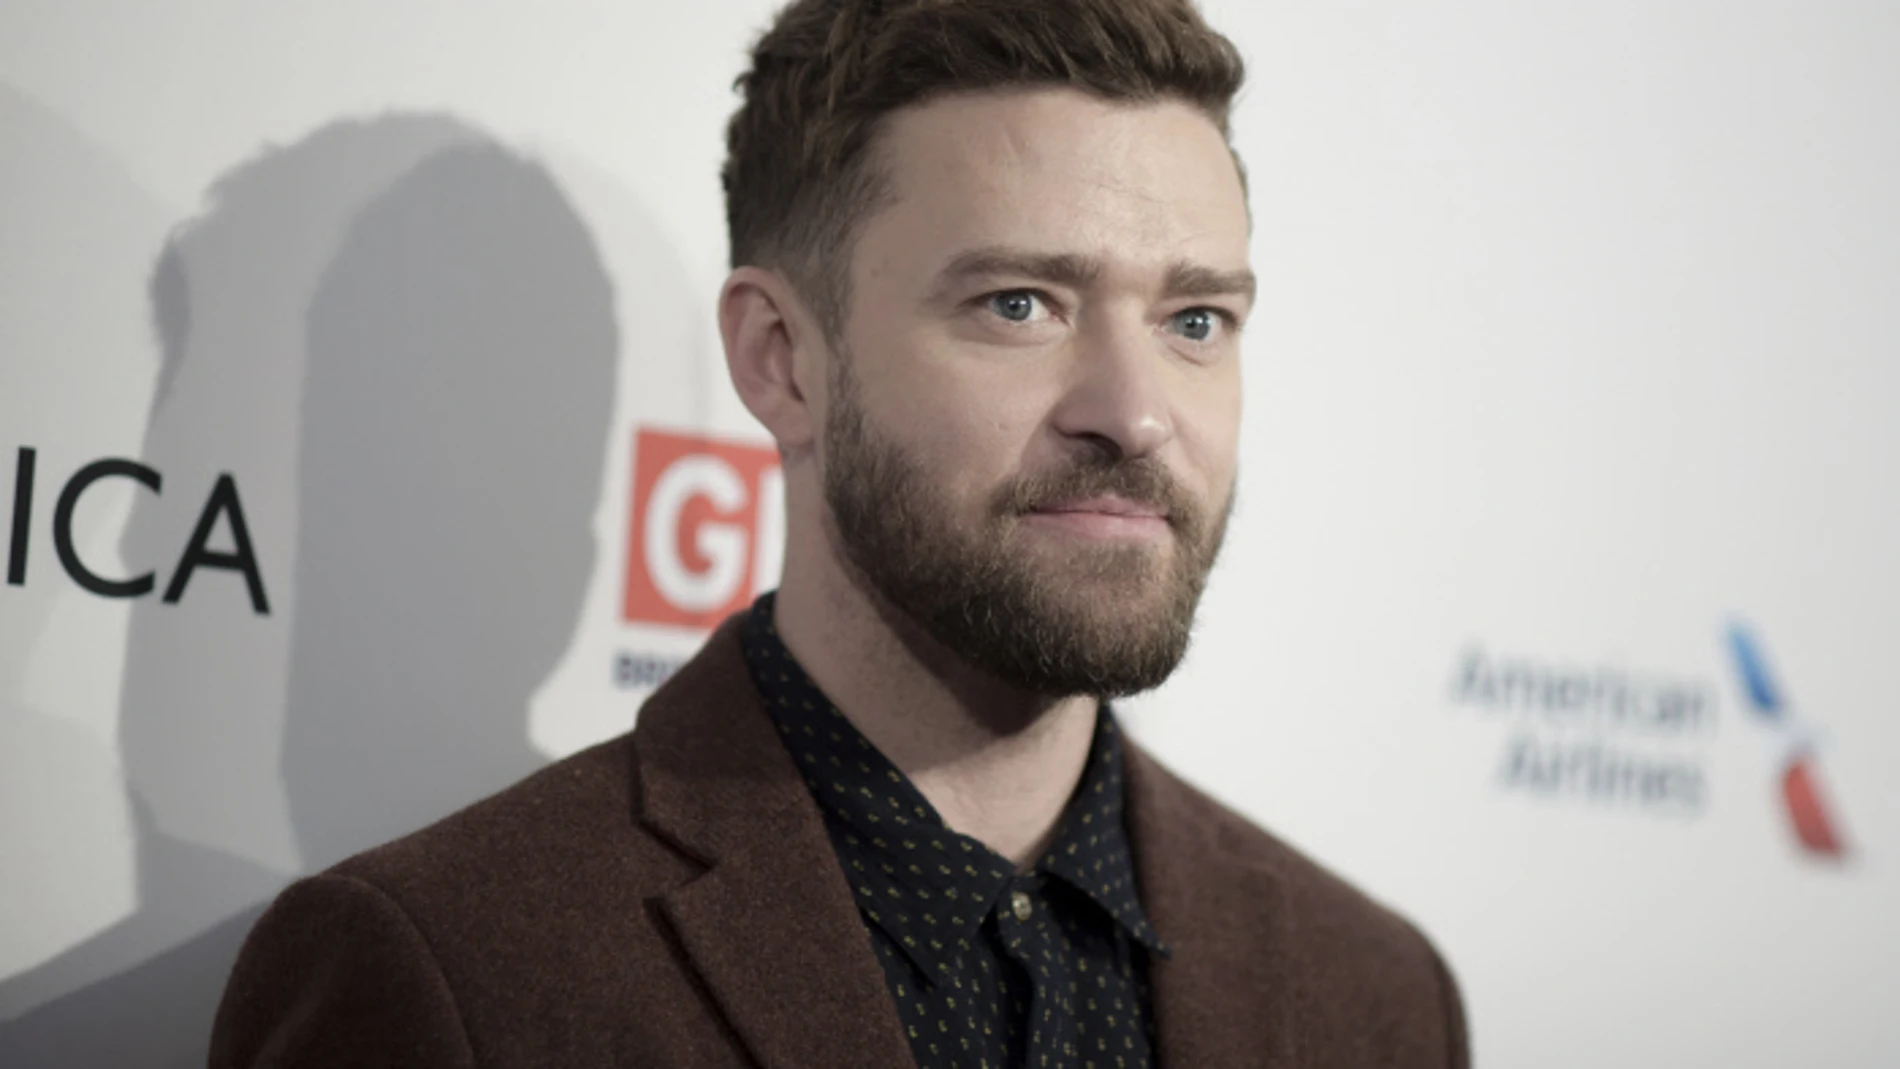 Justin Timberlake, devastado, se despide de su "hermana" sobre los escenarios: "Perdimos una alma preciosa" 